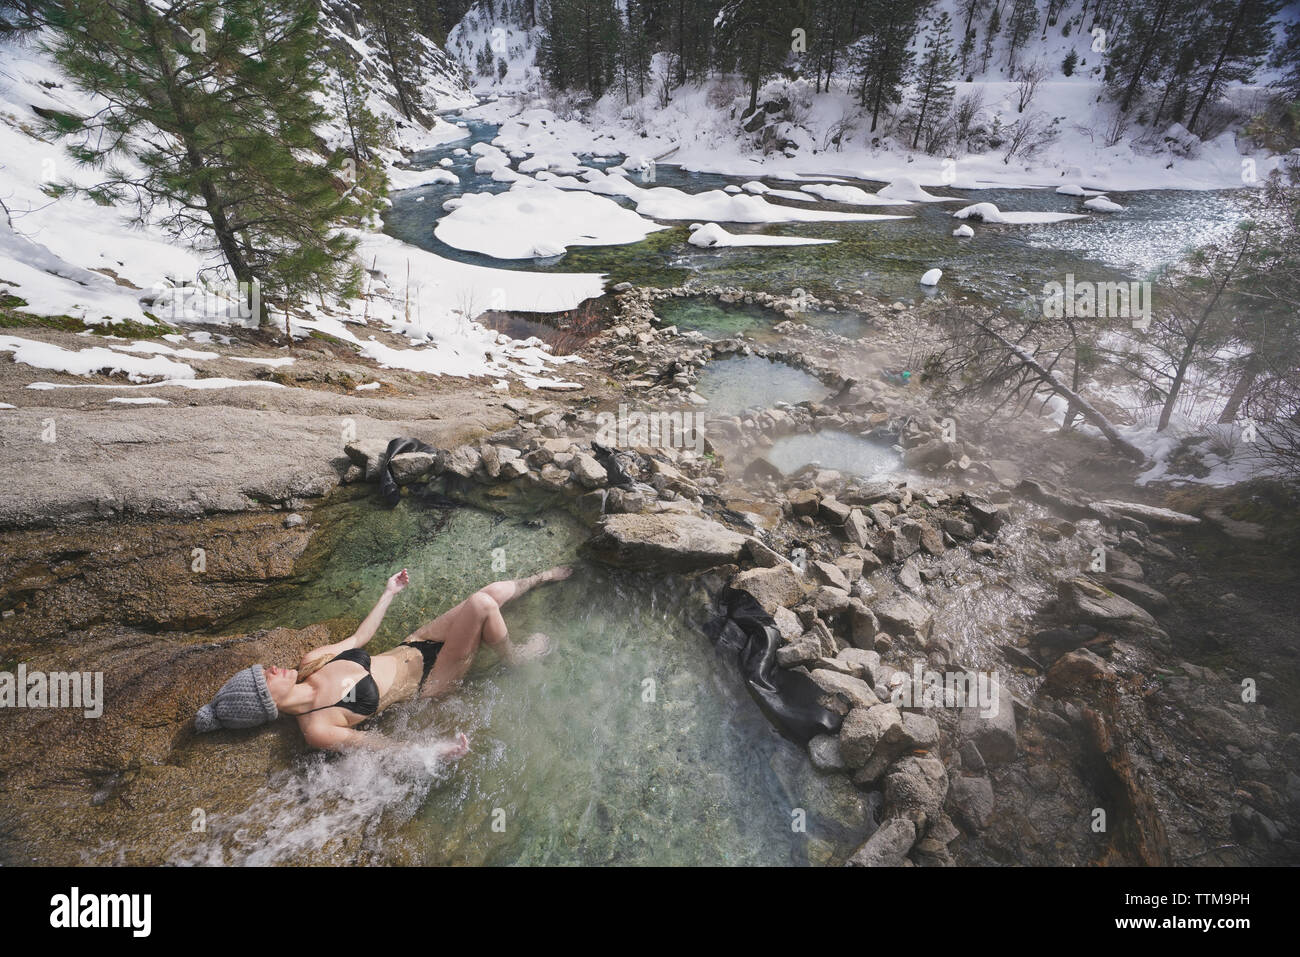 Elevato angolo di visione della donna che indossa un bikini mentre vi rilassate in piscina termale a forest durante il periodo invernale Foto Stock